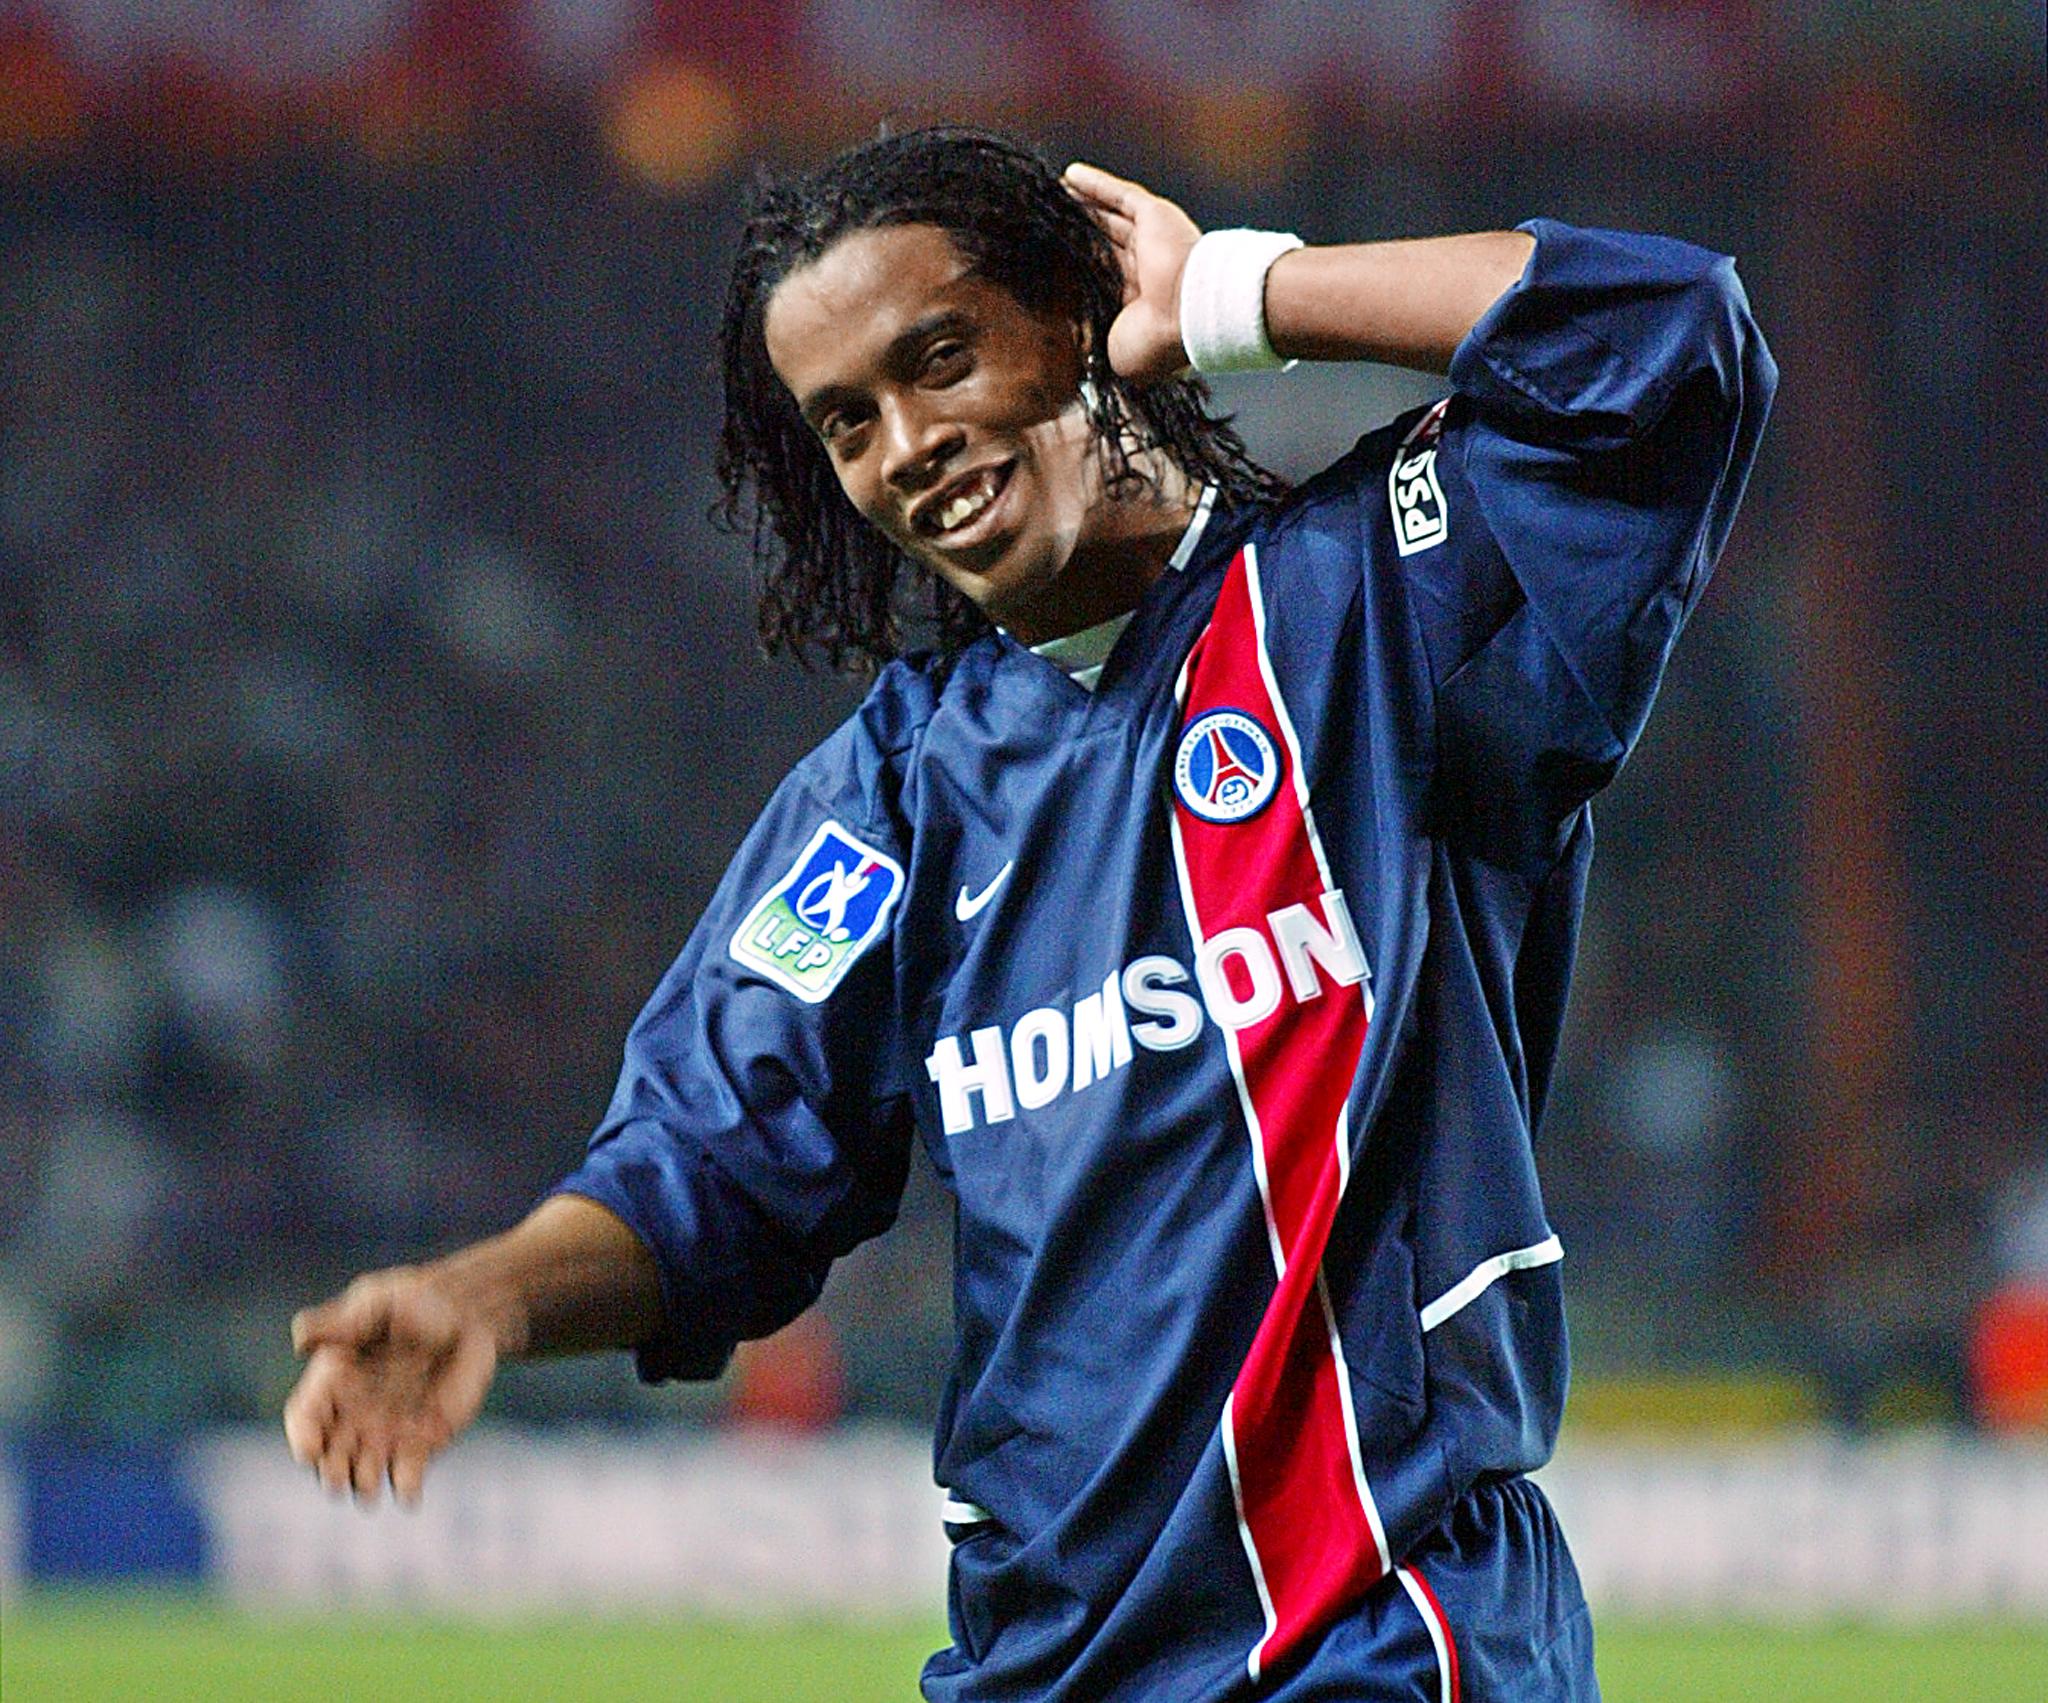 Após o destaque no futebol brasileiro, Ronaldinho começou a dar seus primeiros passos na Europa quando foi contratado pelo PSG em 2001.